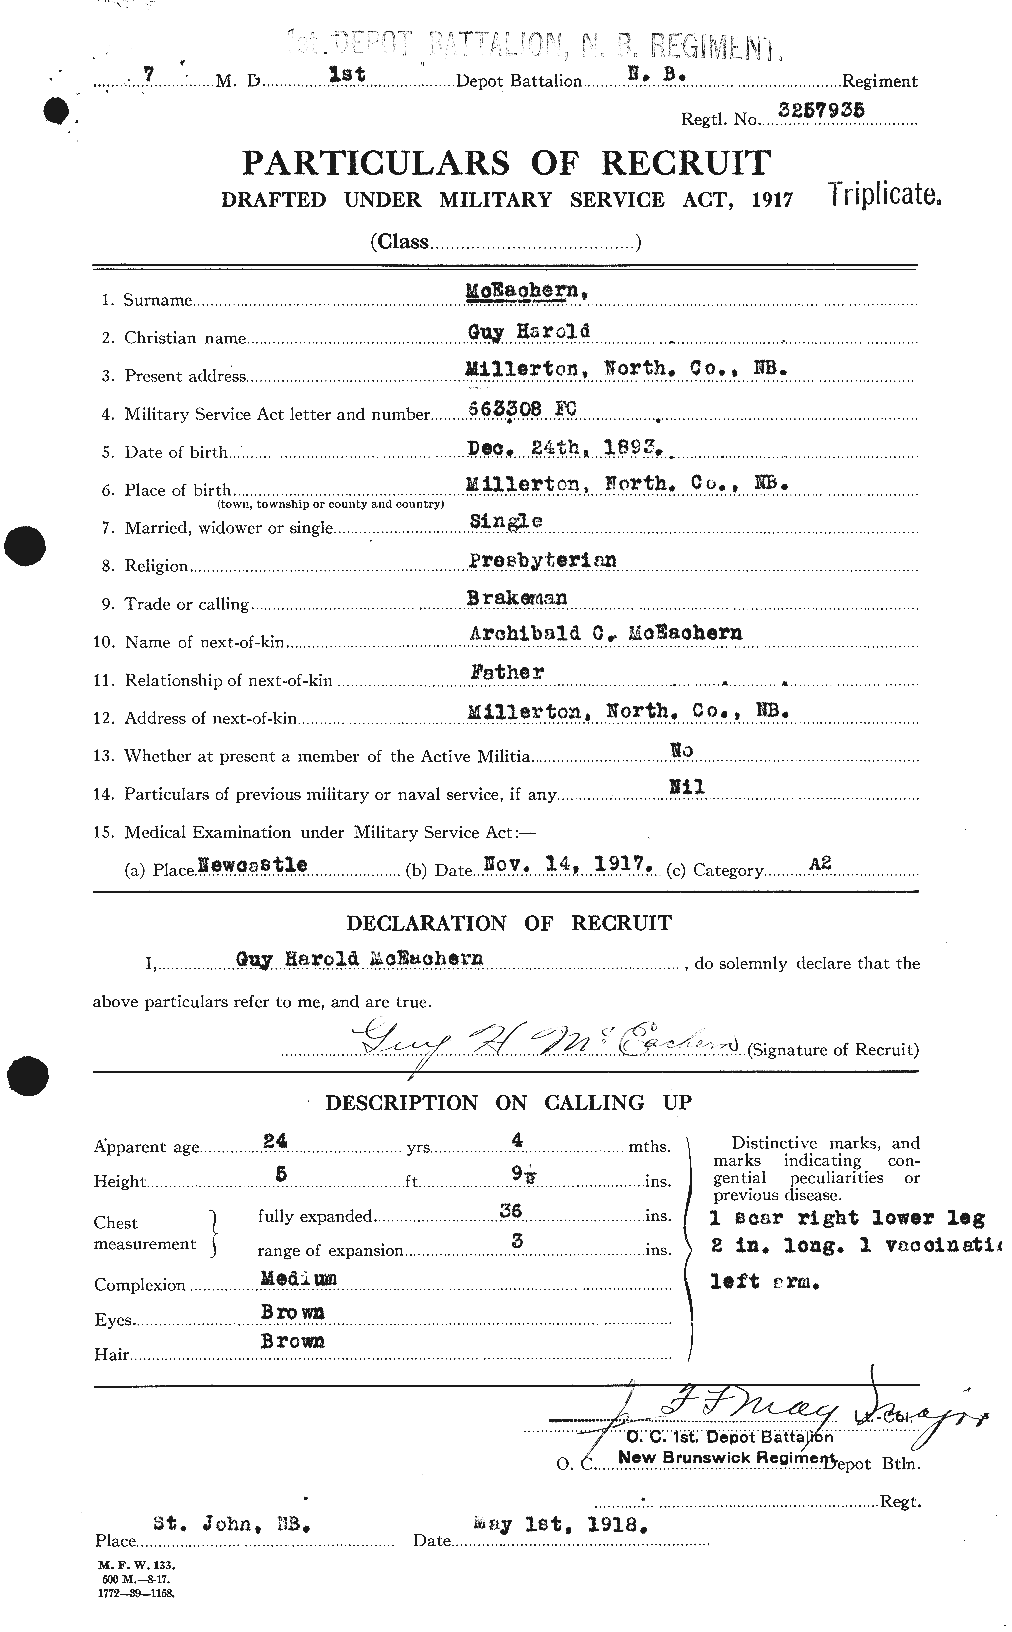 Dossiers du Personnel de la Première Guerre mondiale - CEC 520856a